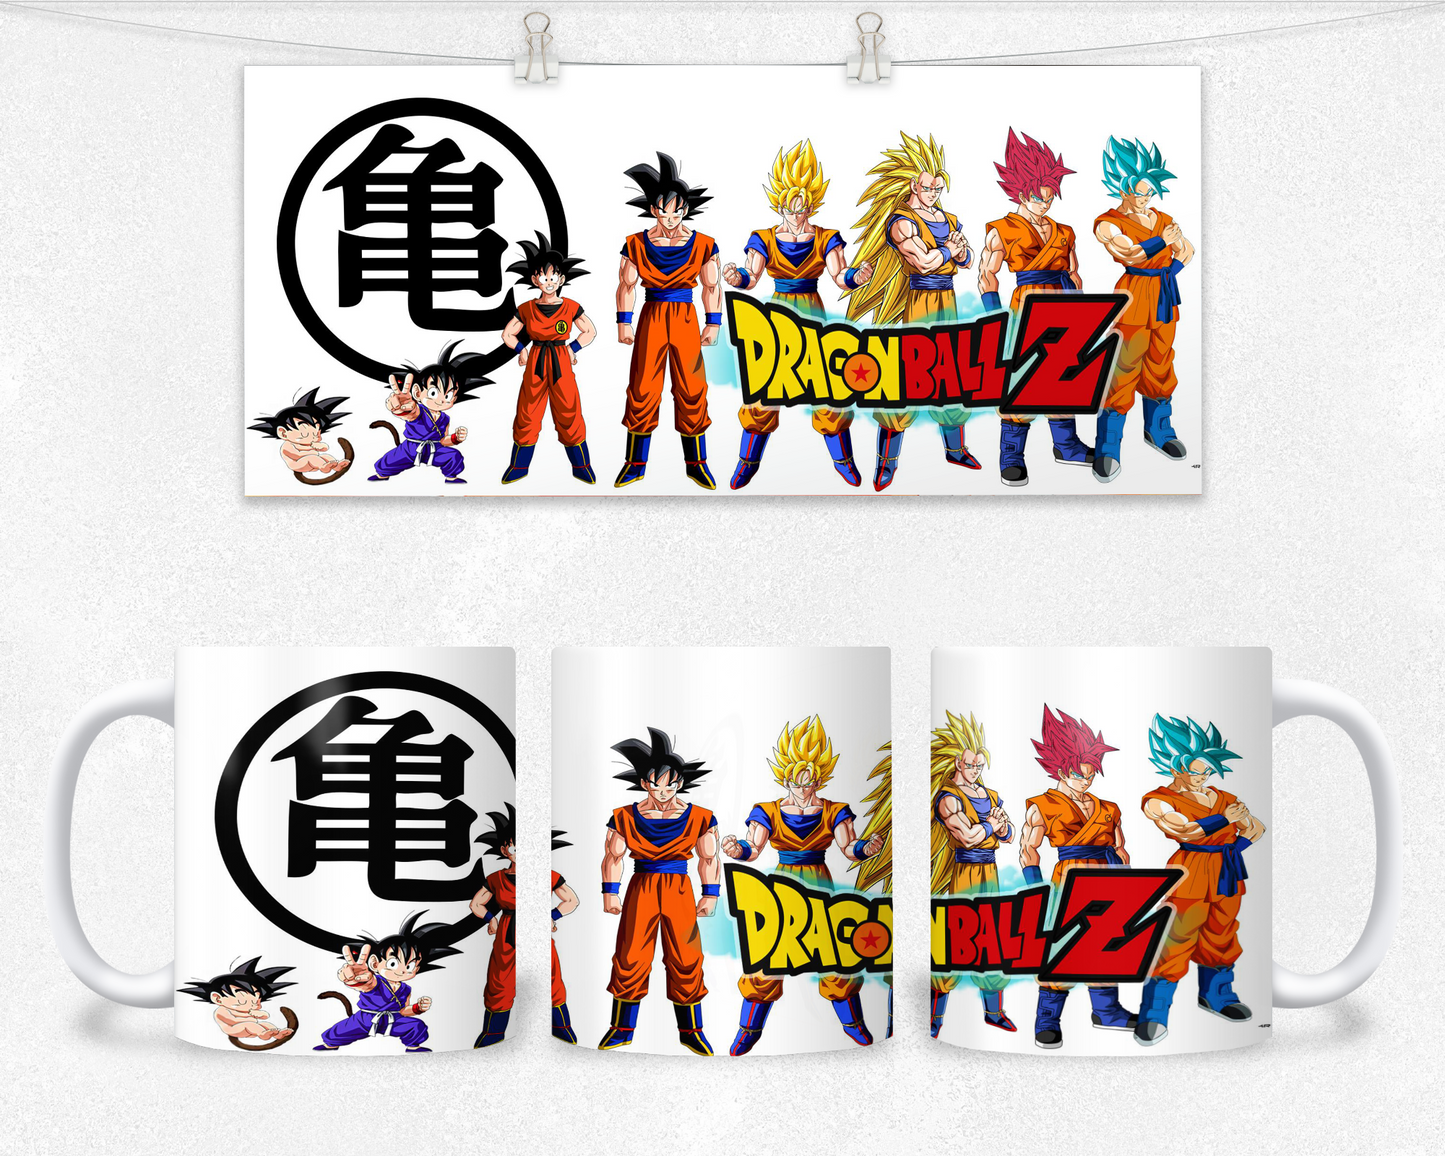 Dragon Ball Z Mug Collection!